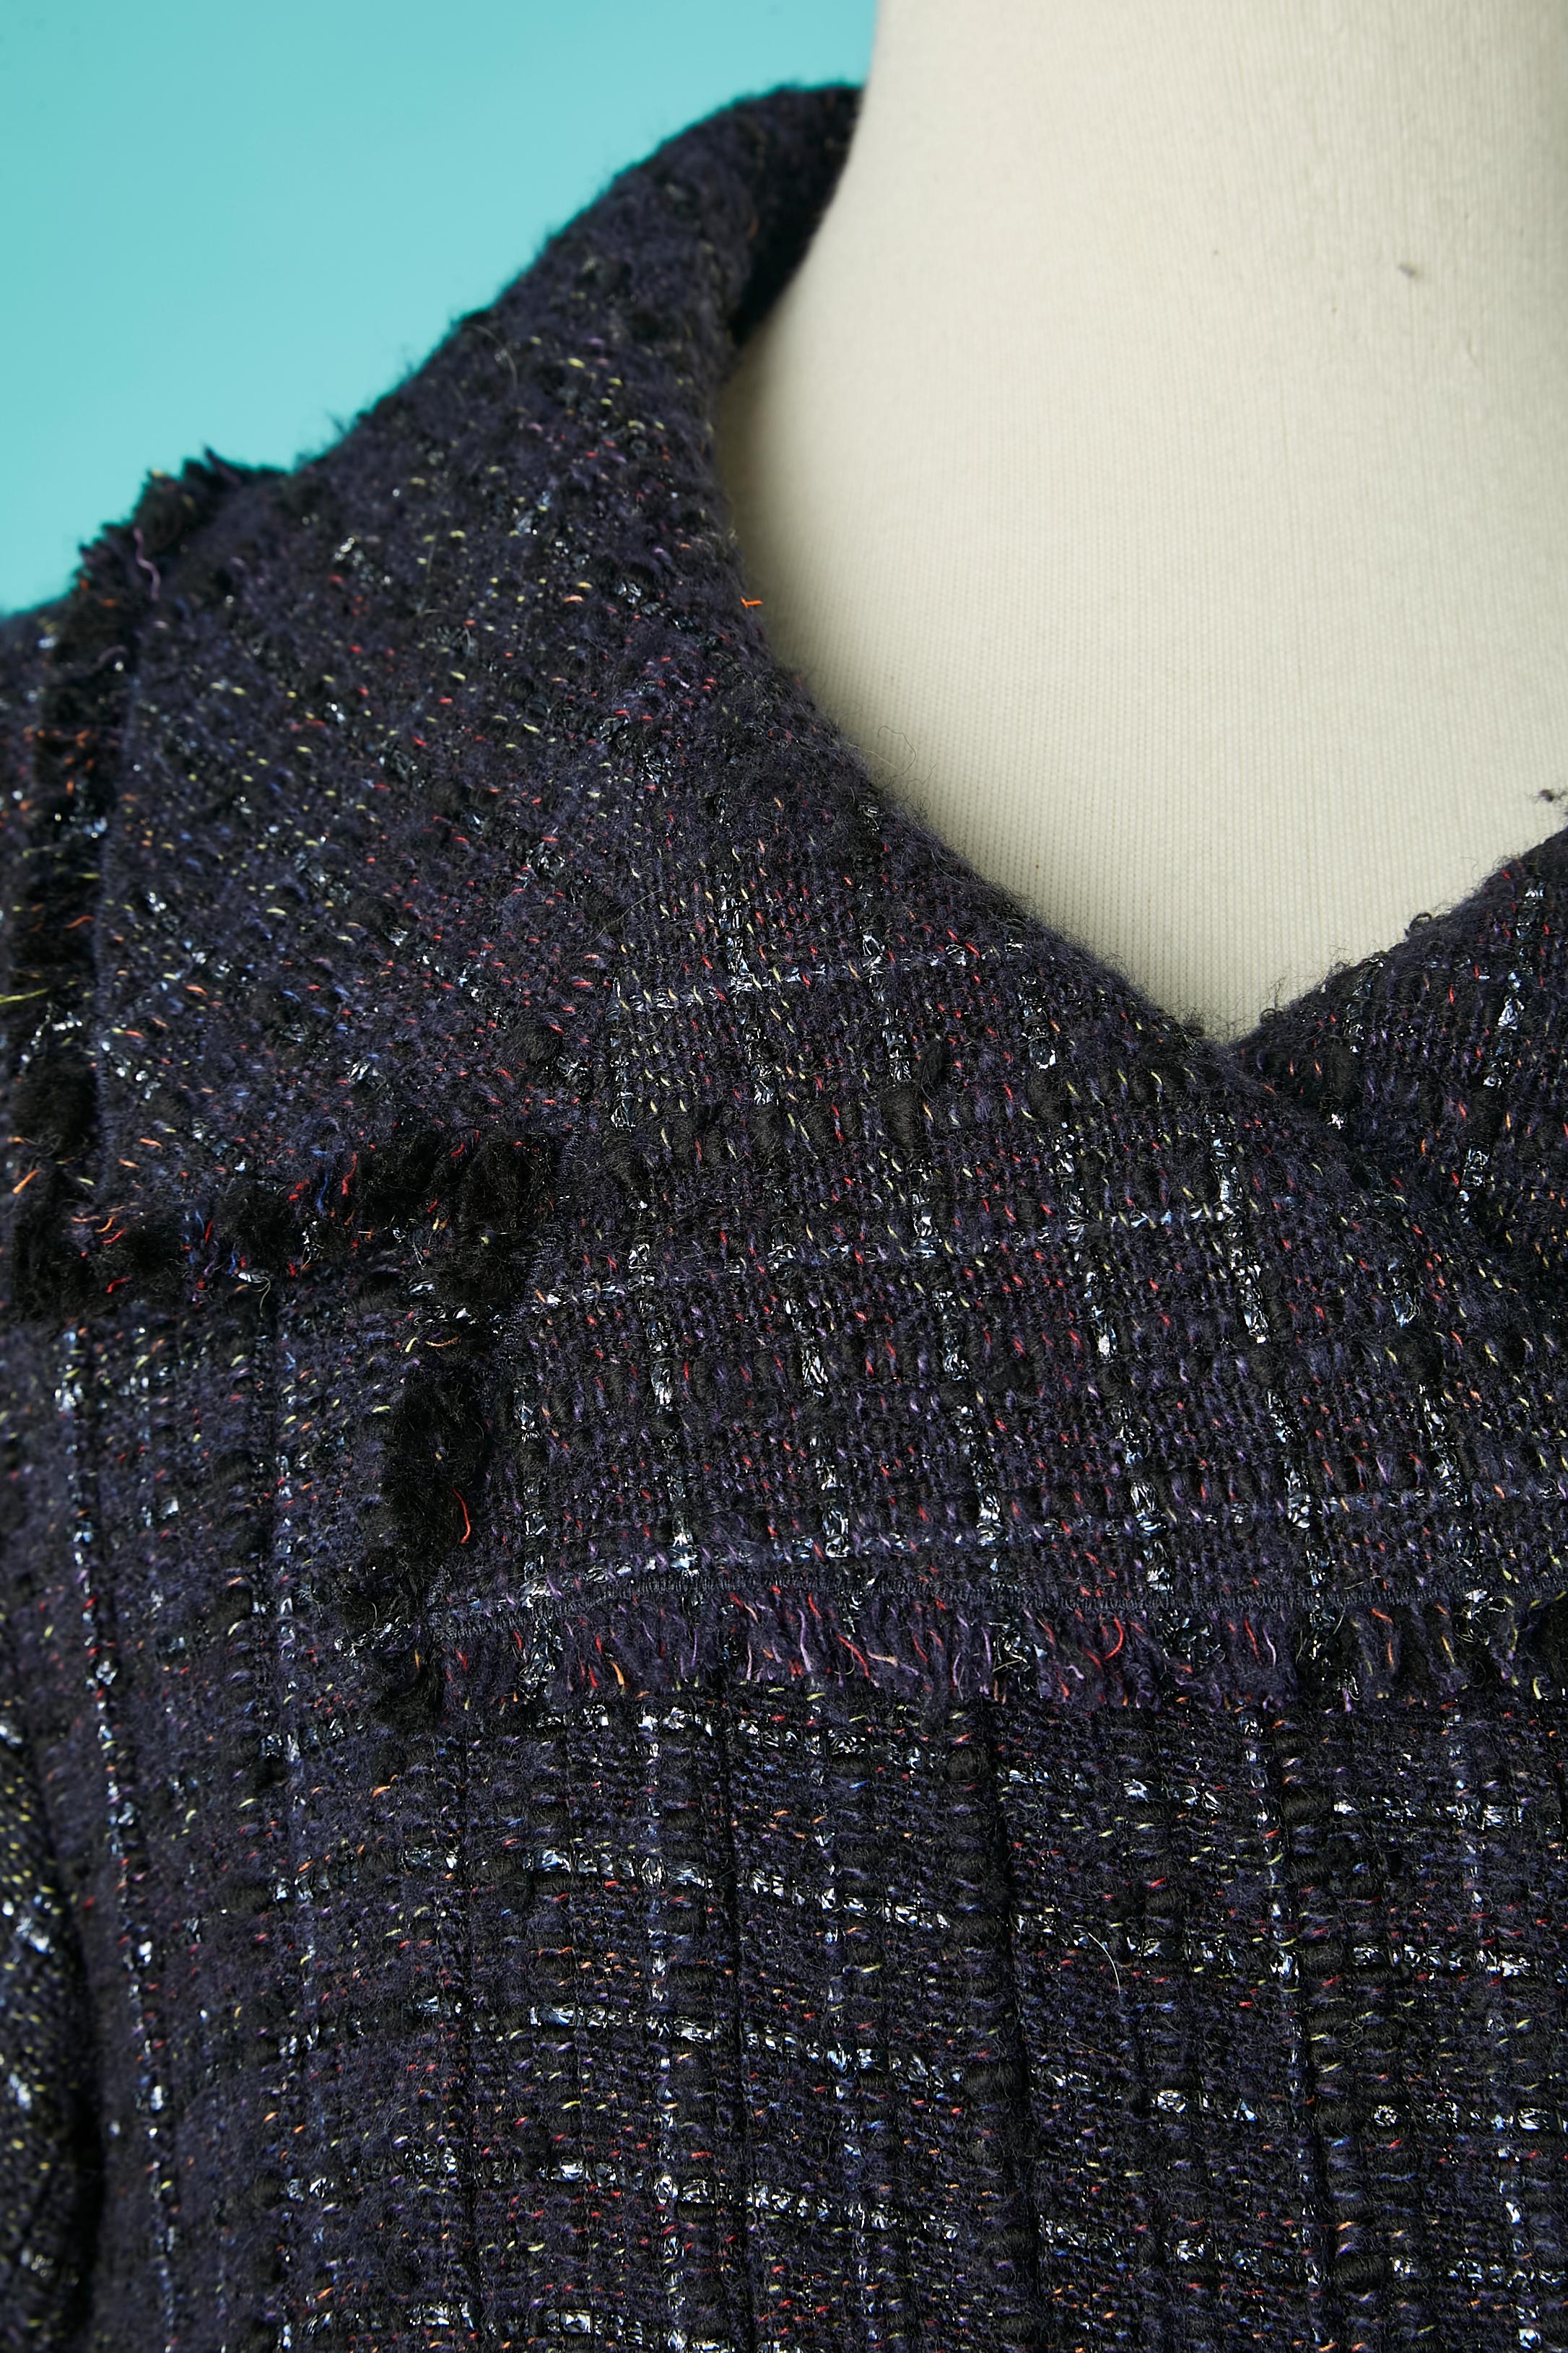 Veste en tweed plissée à double boutonnage avec fermeture à boucle et sangle en daim.  Tissu principal : 60% laine, 36% acrylique, 3% polyester, 1% métal. Doublure jacquard de marque : 100% soie (de l'épaule à la taille uniquement).
Collectional Les